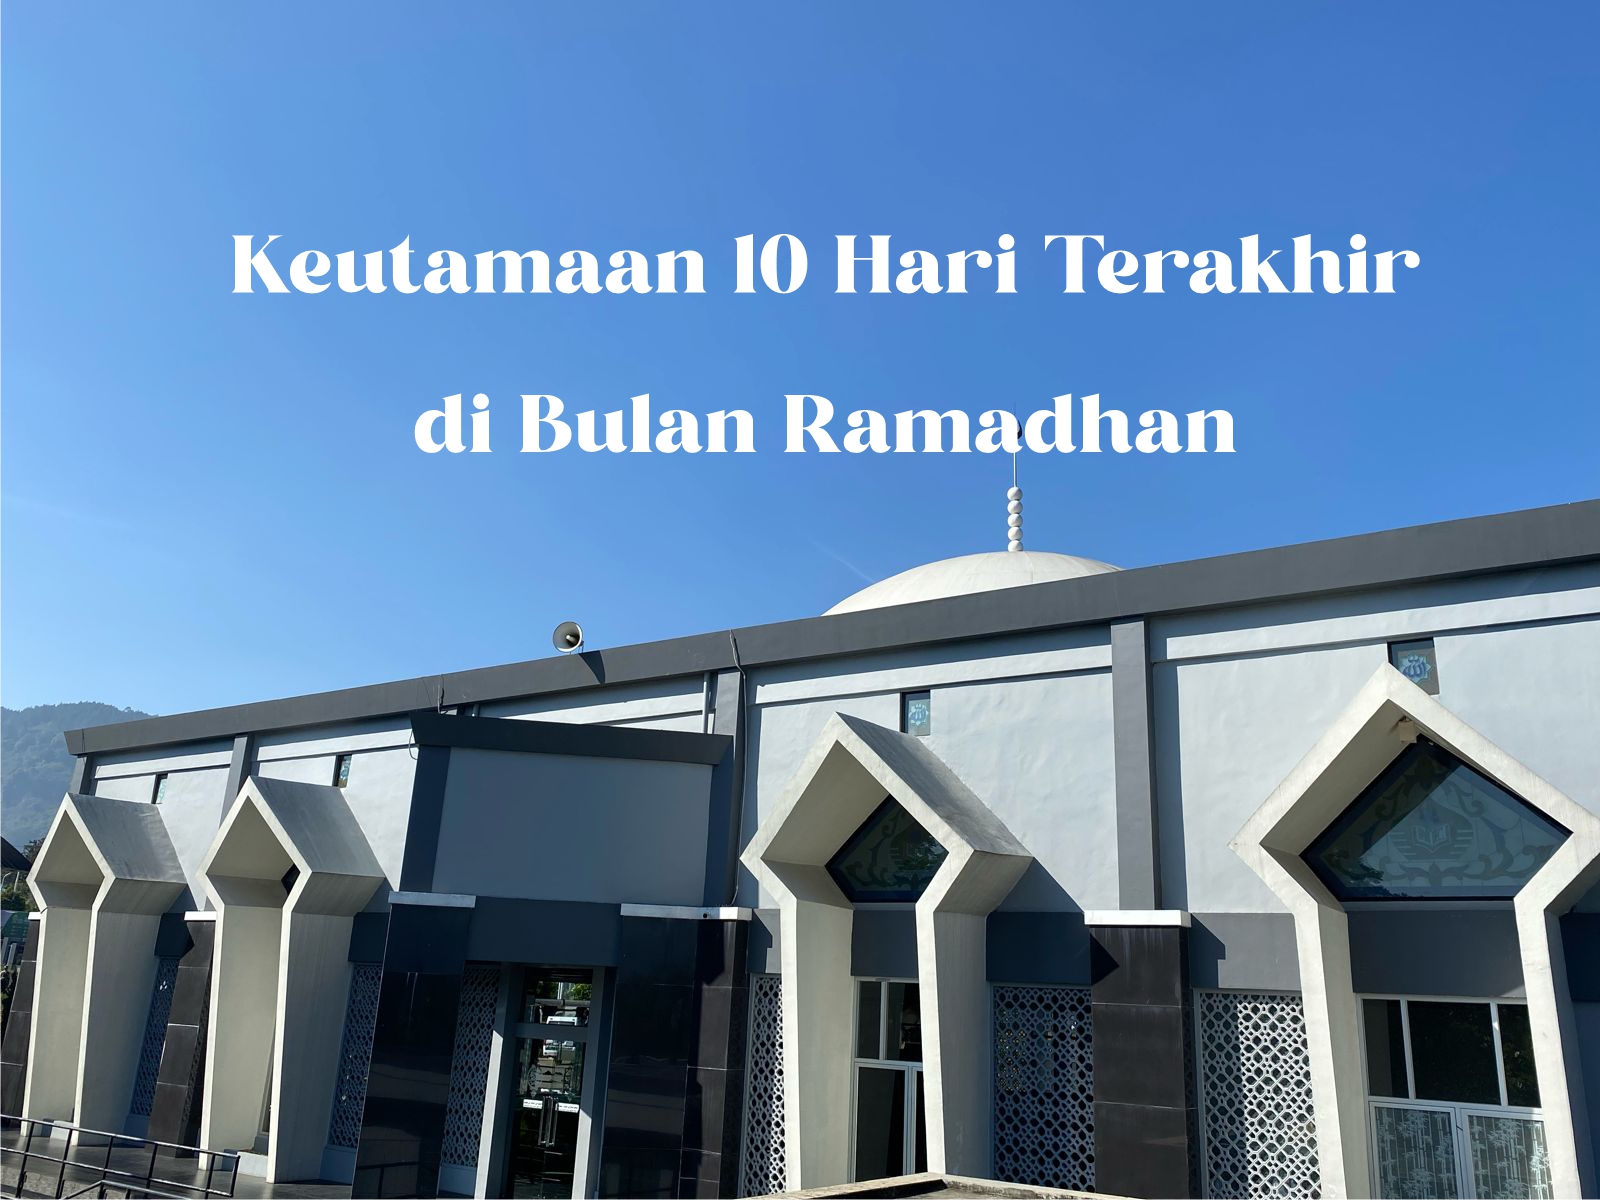 Keutamaan 10 Hari Terakhir di Bulan Ramadhan